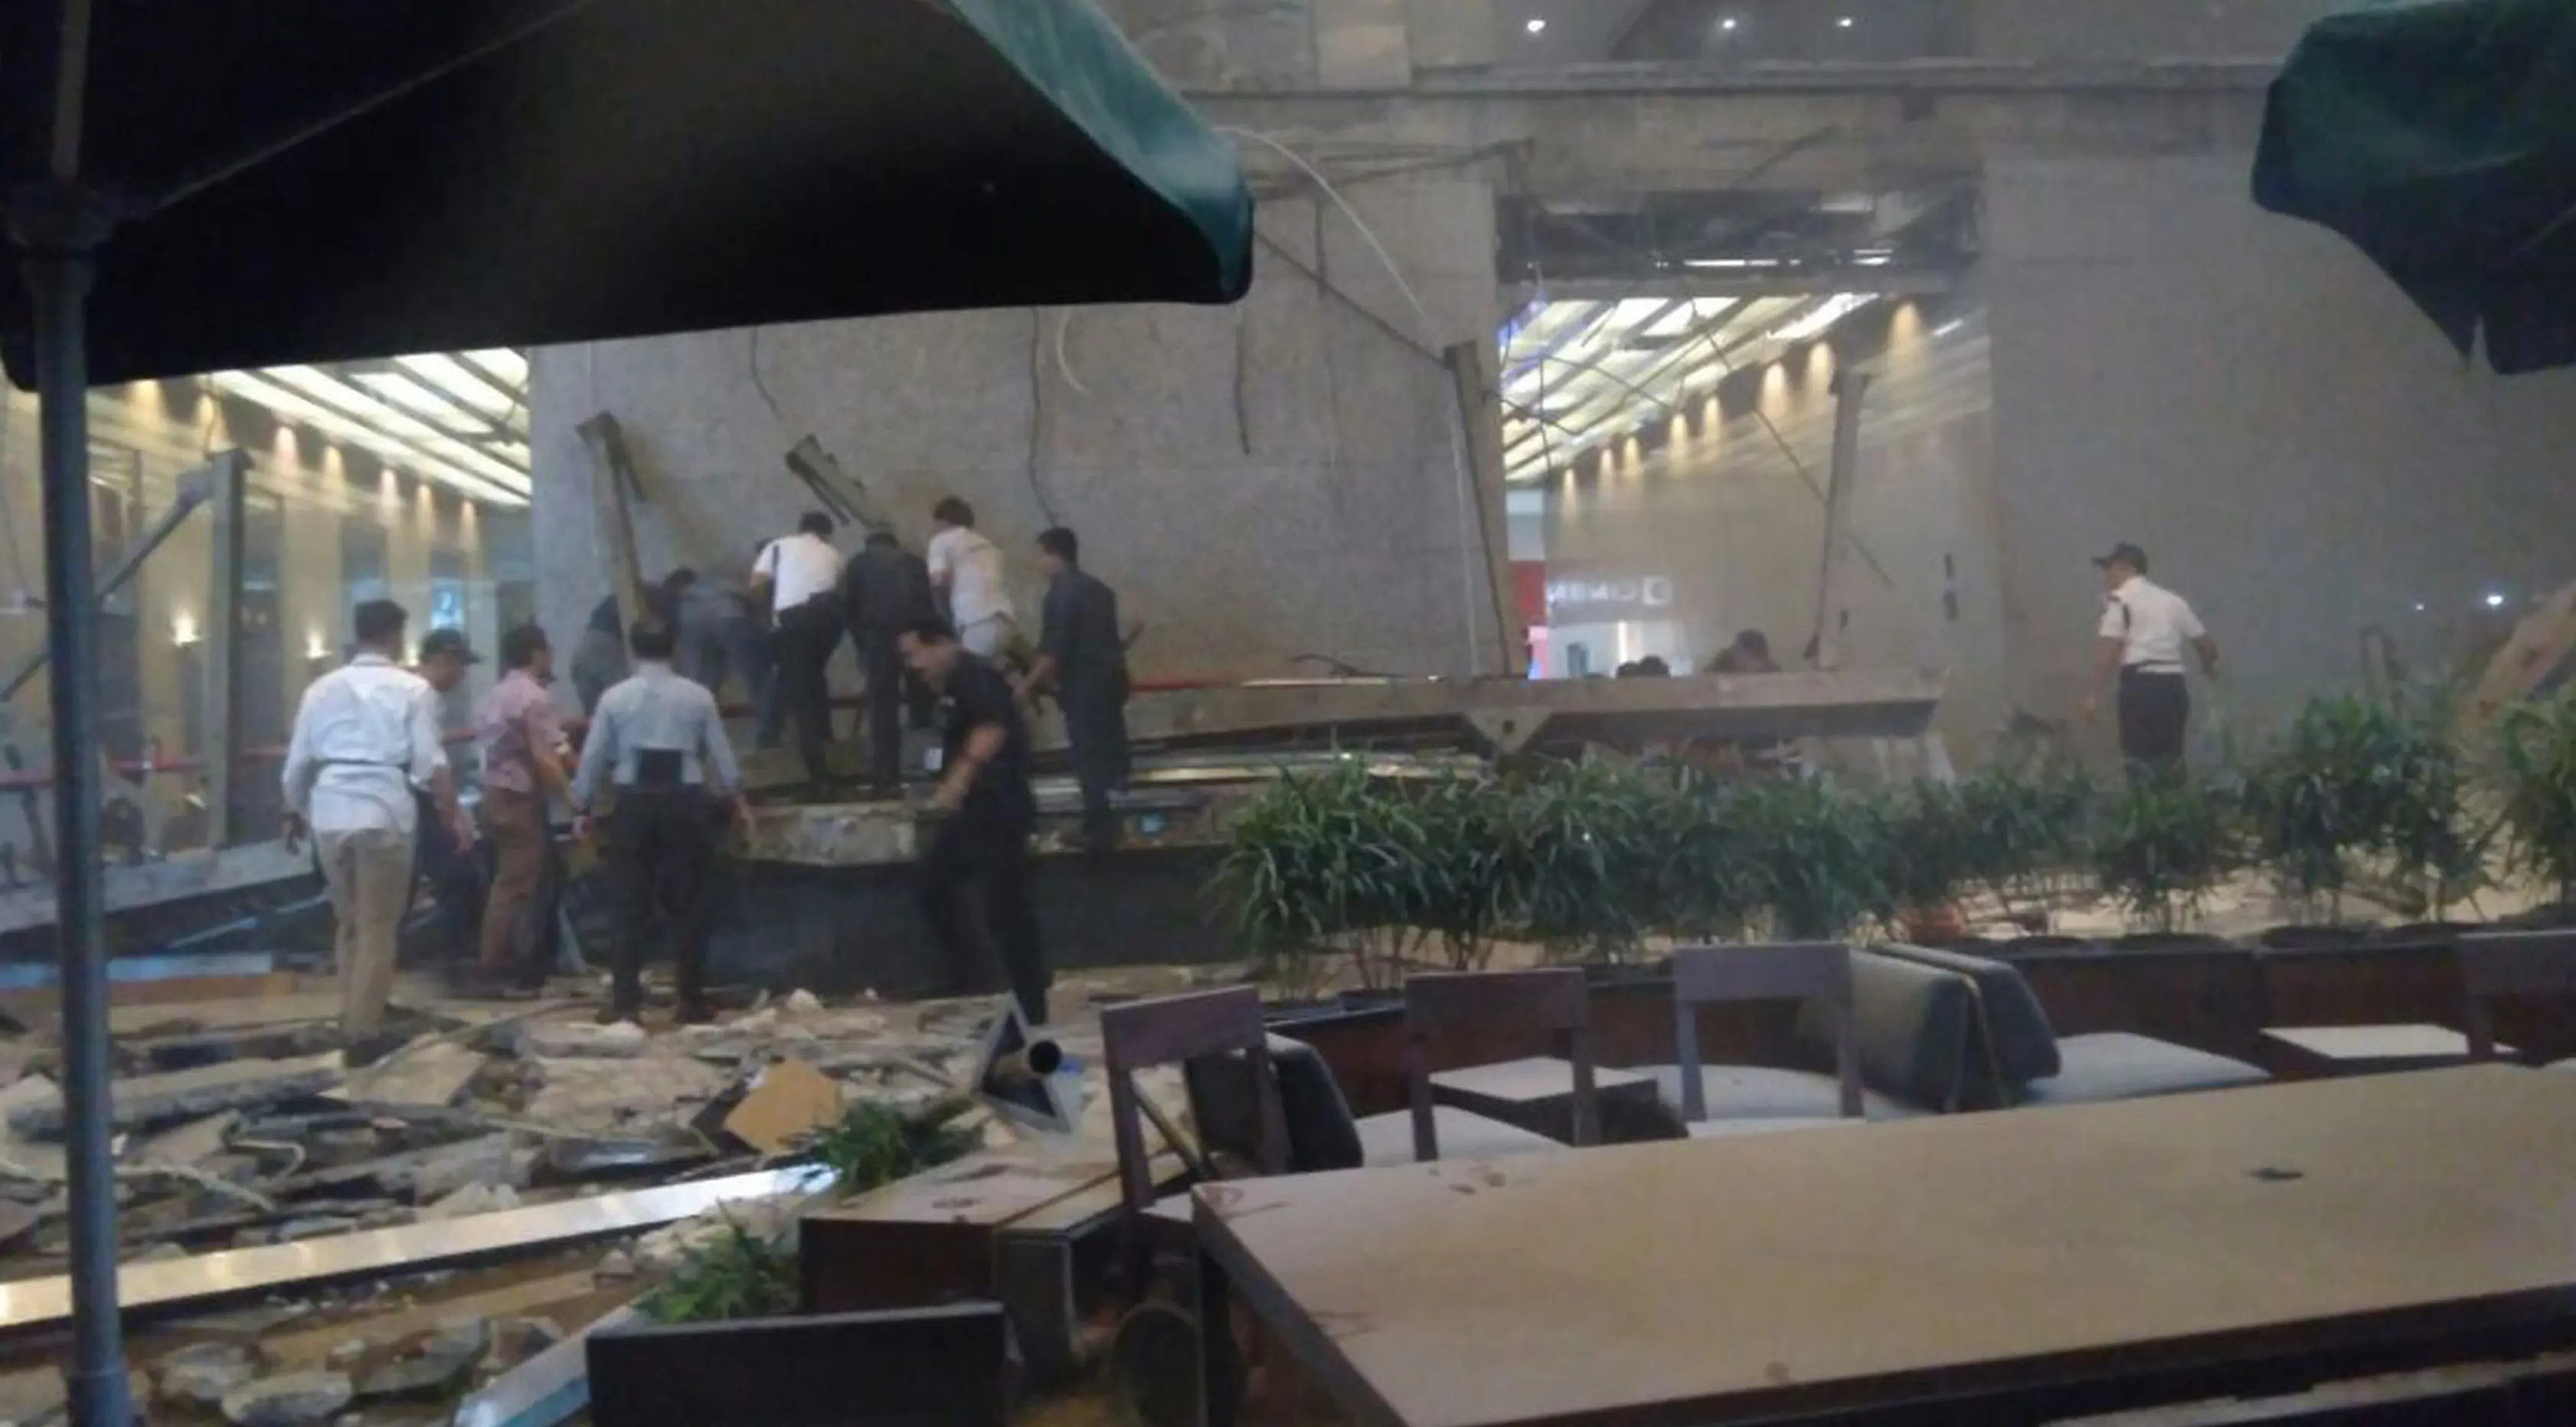 Sejumlah orang mengevakuasi korban dari robohnya balkon lantai 1 tower II Bursa Efek Indonesia (BEI) roboh, Jakarta, Senin (15/1). Insiden itu menyebabkan kerusakan di bagian gedung kawasan Bisnis Sudirman tersebut. (Liputan6.com/istimewa)